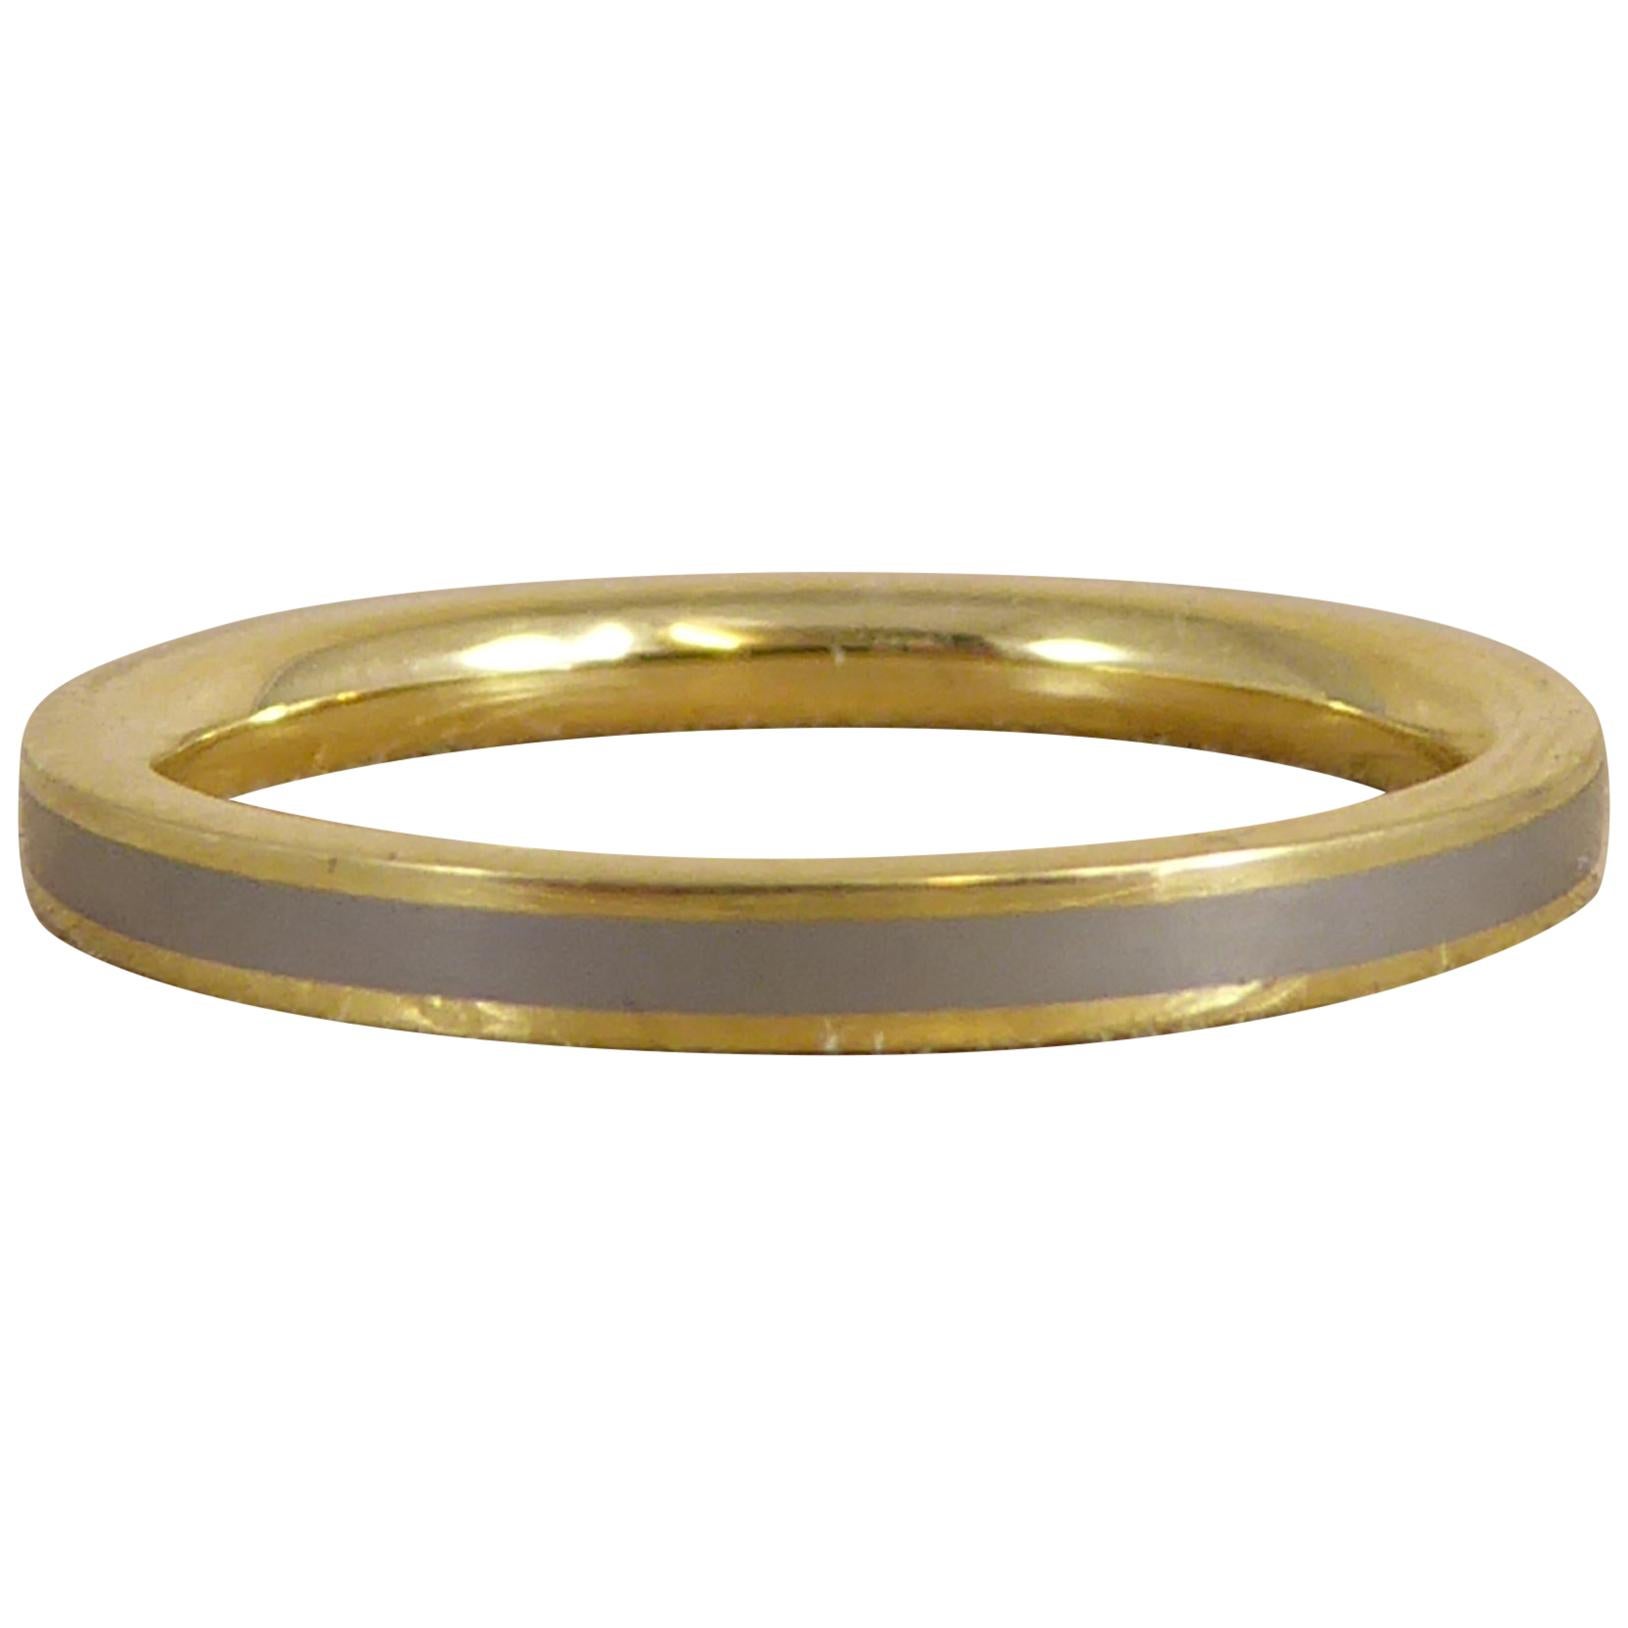 Contemporary Gold and Titanium Ring, Fashion Designer Design